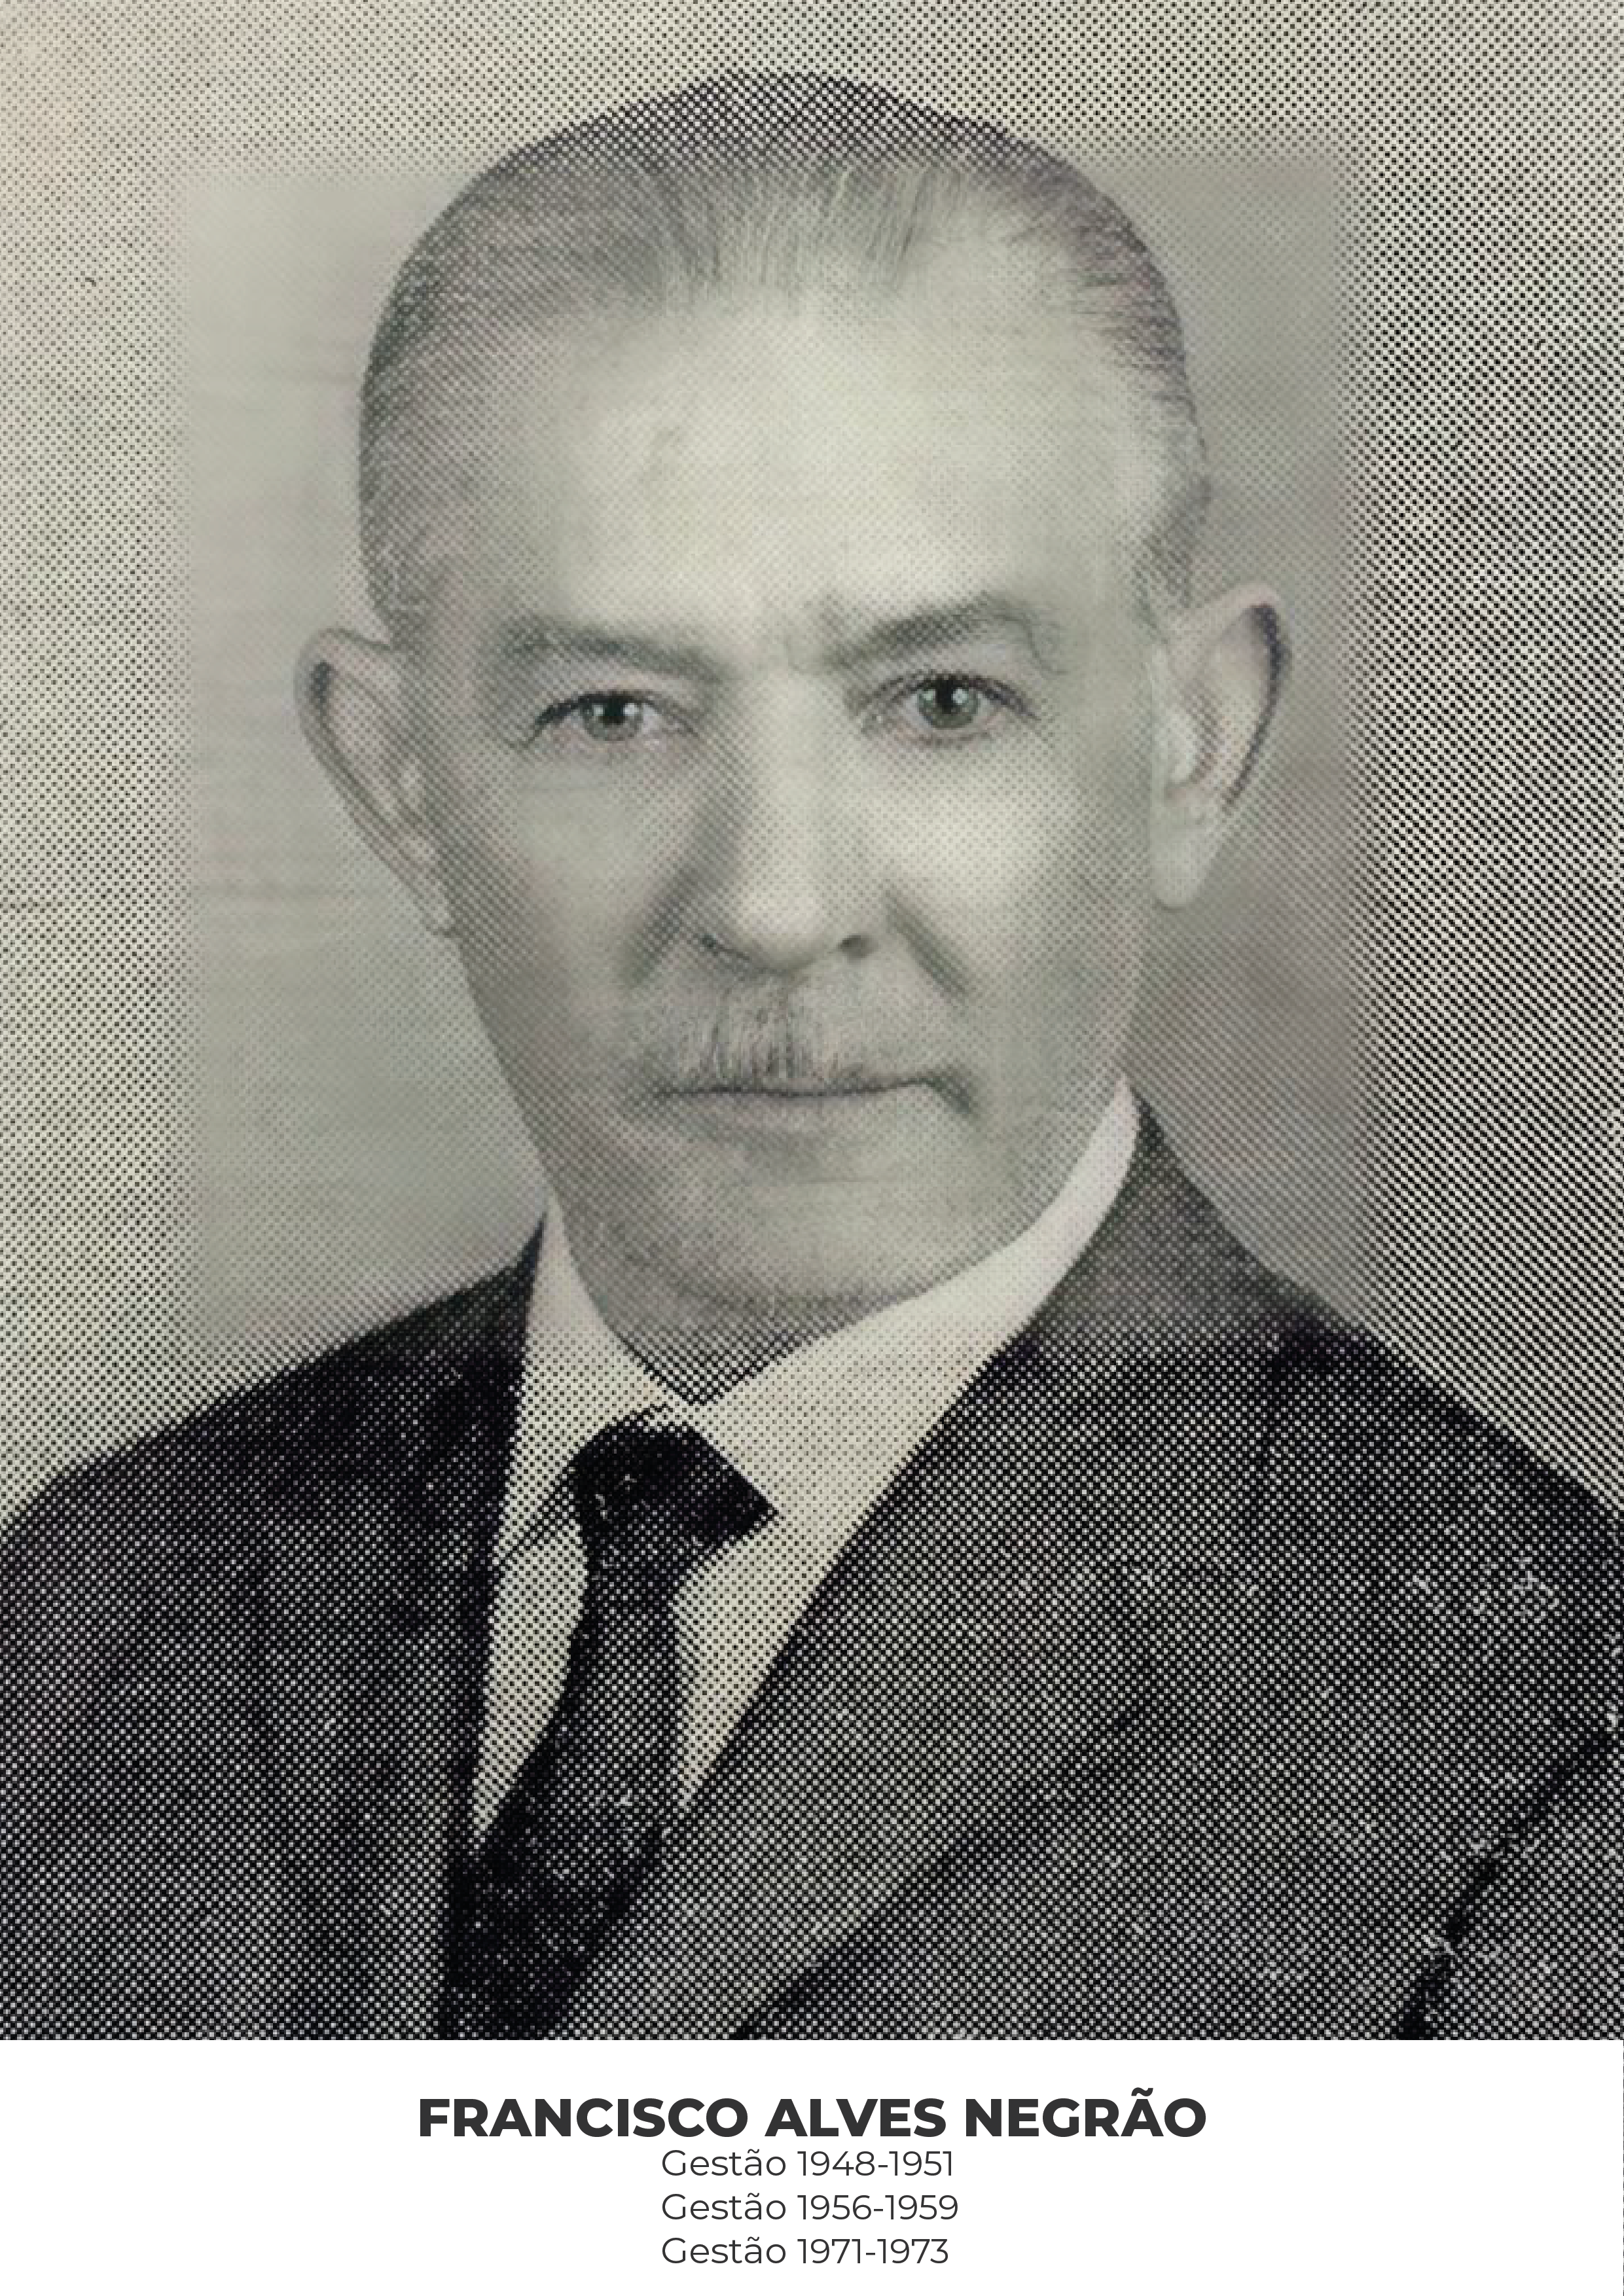 Francisco Alves Negrão